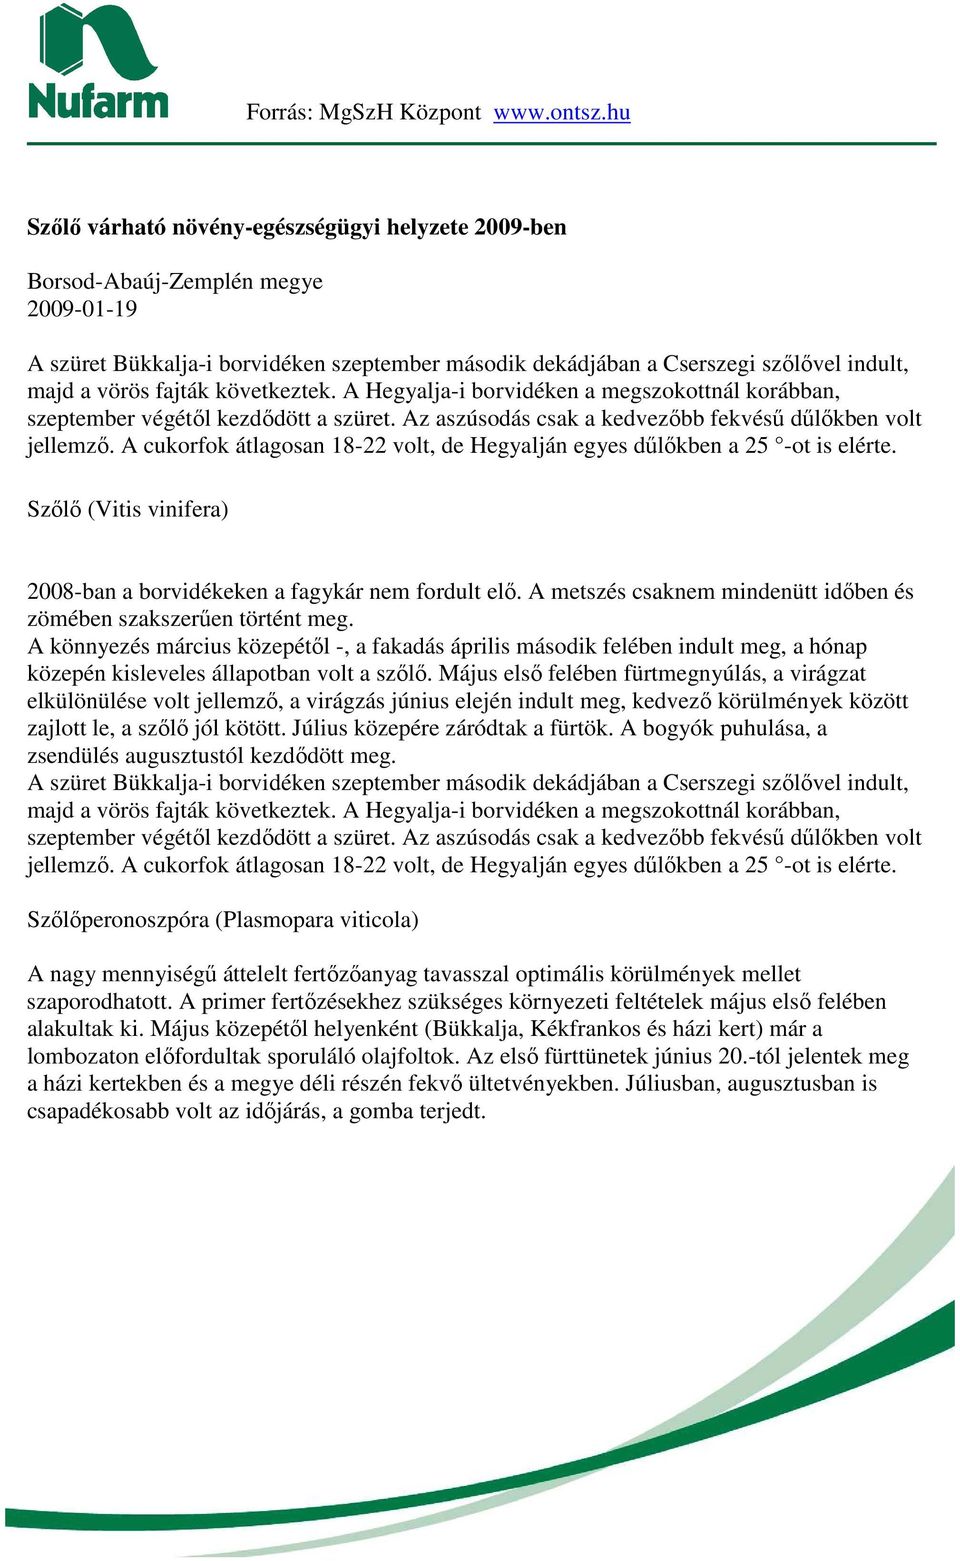 A cukorfok átlagosan 18-22 volt, de Hegyalján egyes dőlıkben a 25 -ot is elérte. Szılı (Vitis vinifera) 2008-ban a borvidékeken a fagykár nem fordult elı.